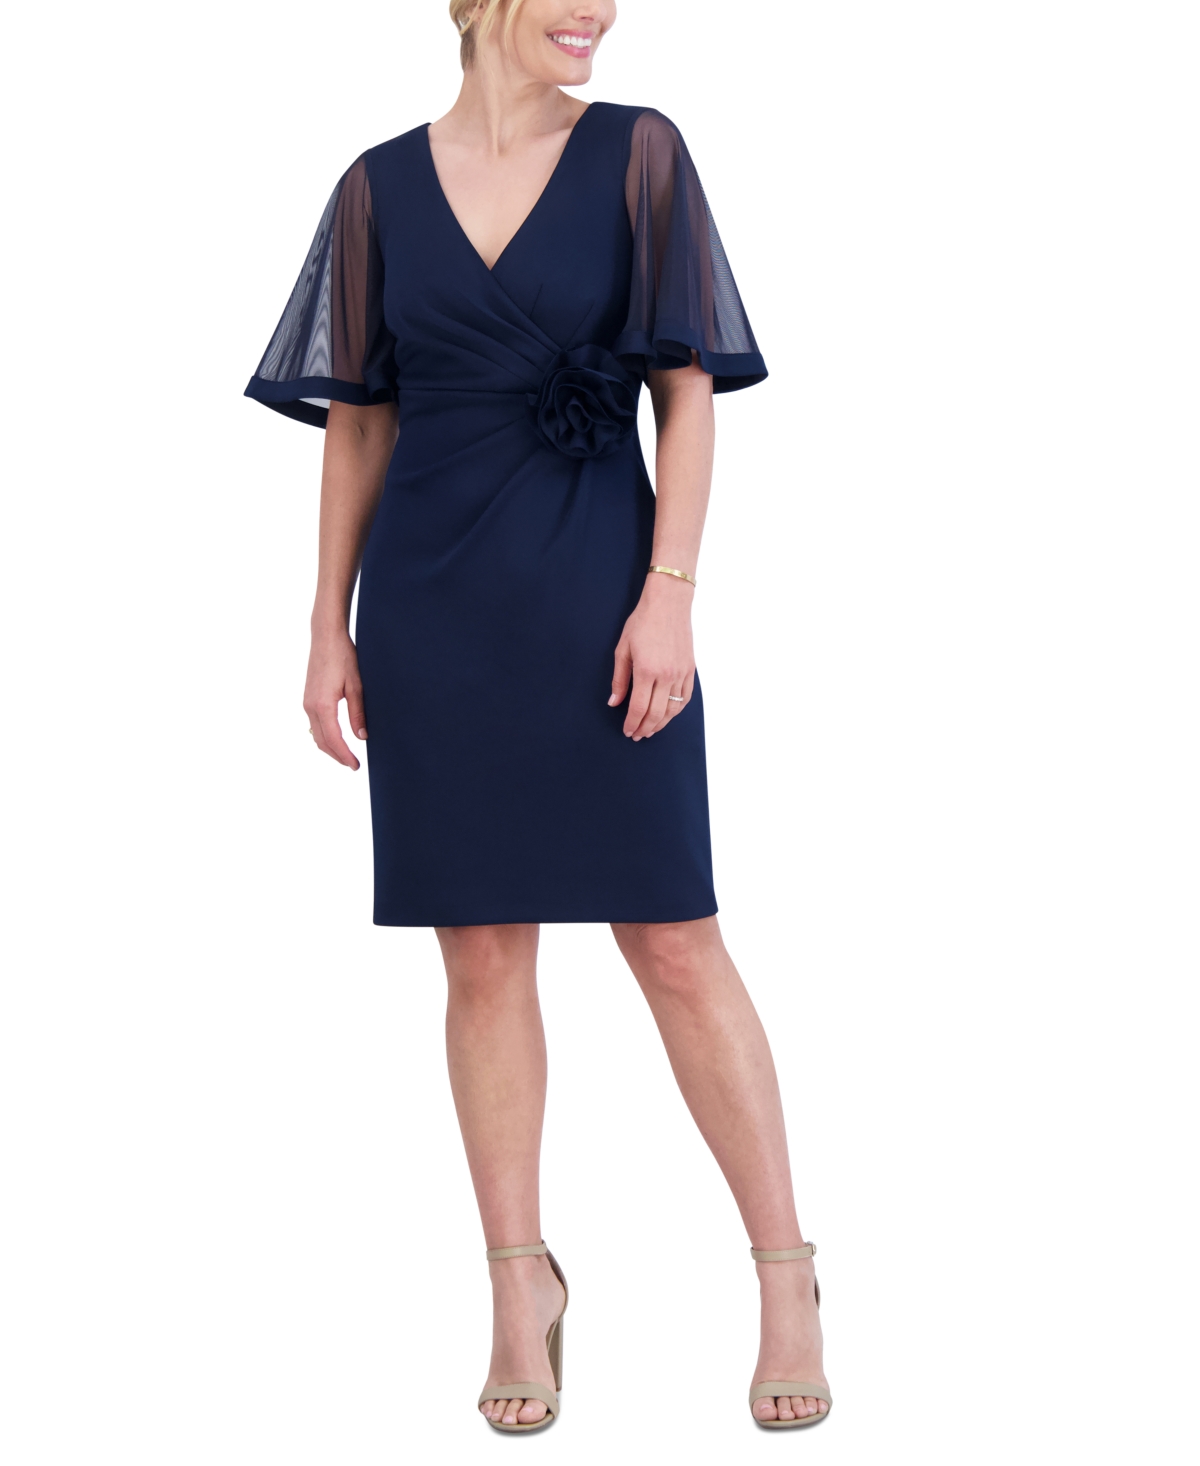 Women's Rosette-Waist Short-Sleeve Dress - Navy